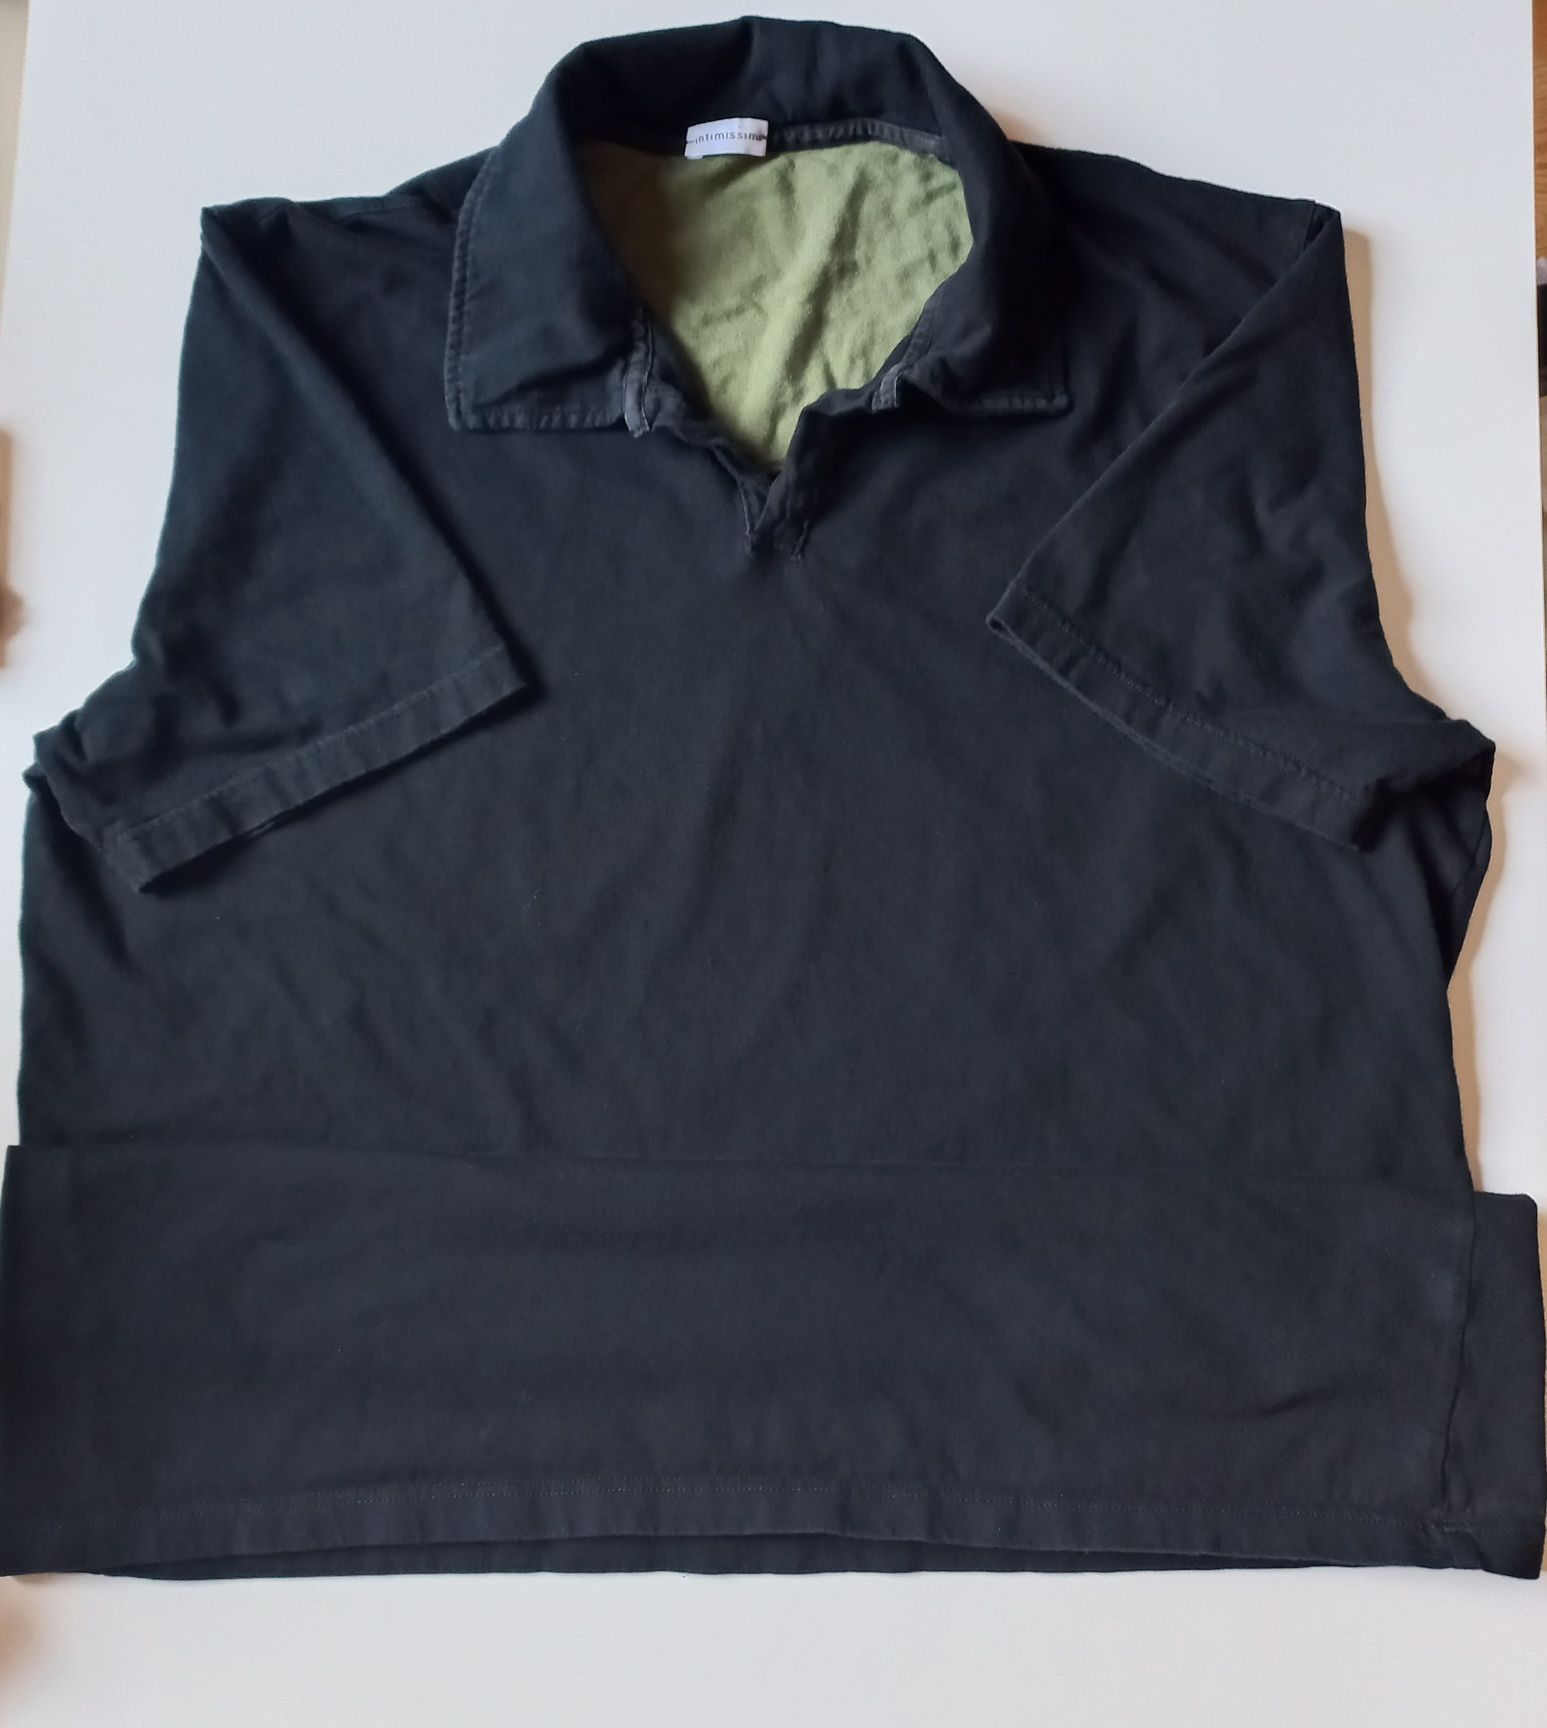 Piżama męska, Intimissimi, rozmiar XL, używana